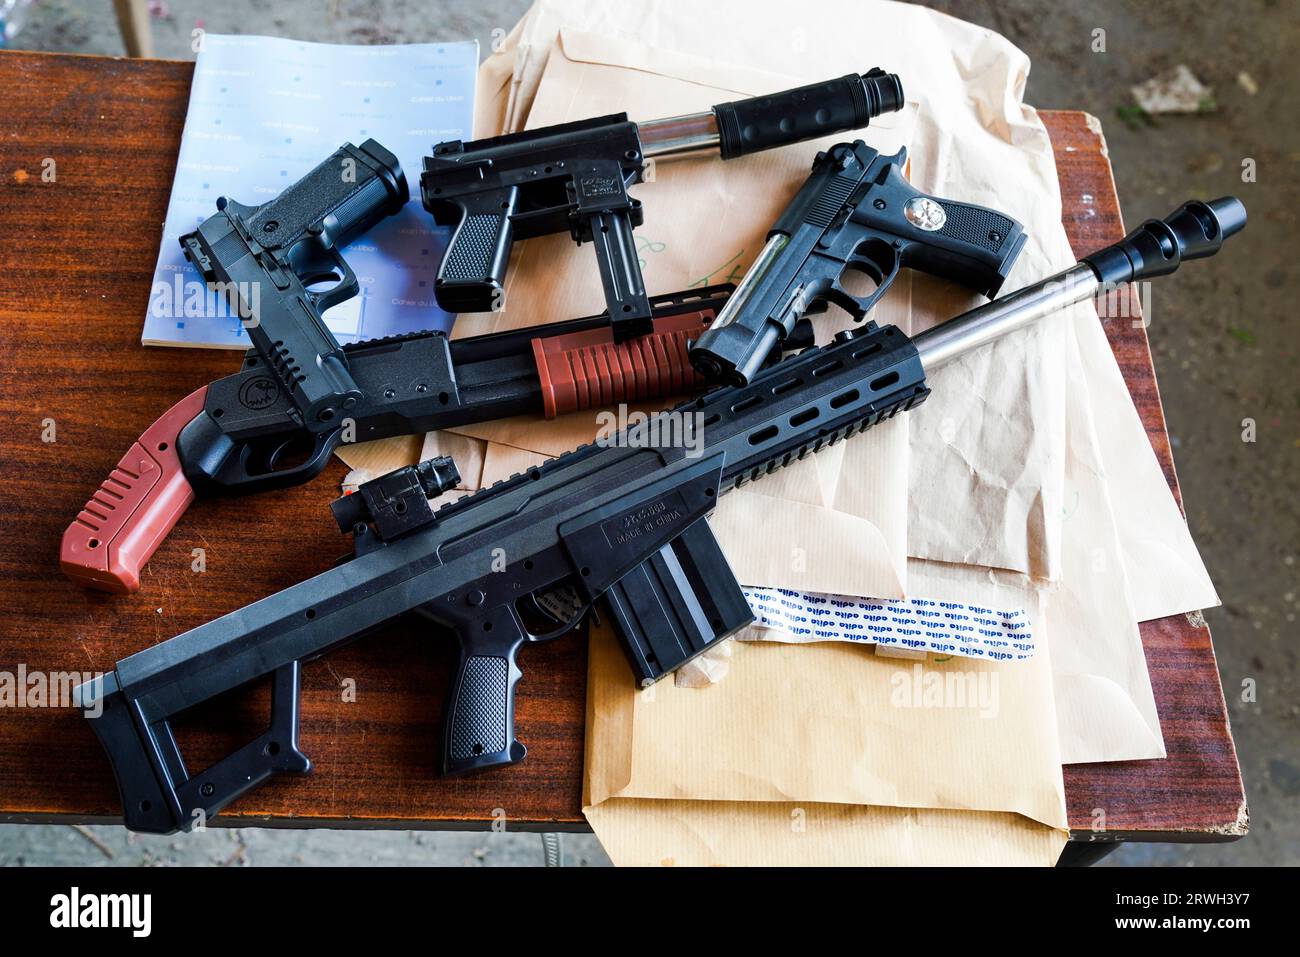 Pistolen und Gewehre als Kinderspielzeug müssen am Eingang zu einem Kinderfest auf dem Schulhof abgegeben werden. Tripoli, Libanon Foto Stock